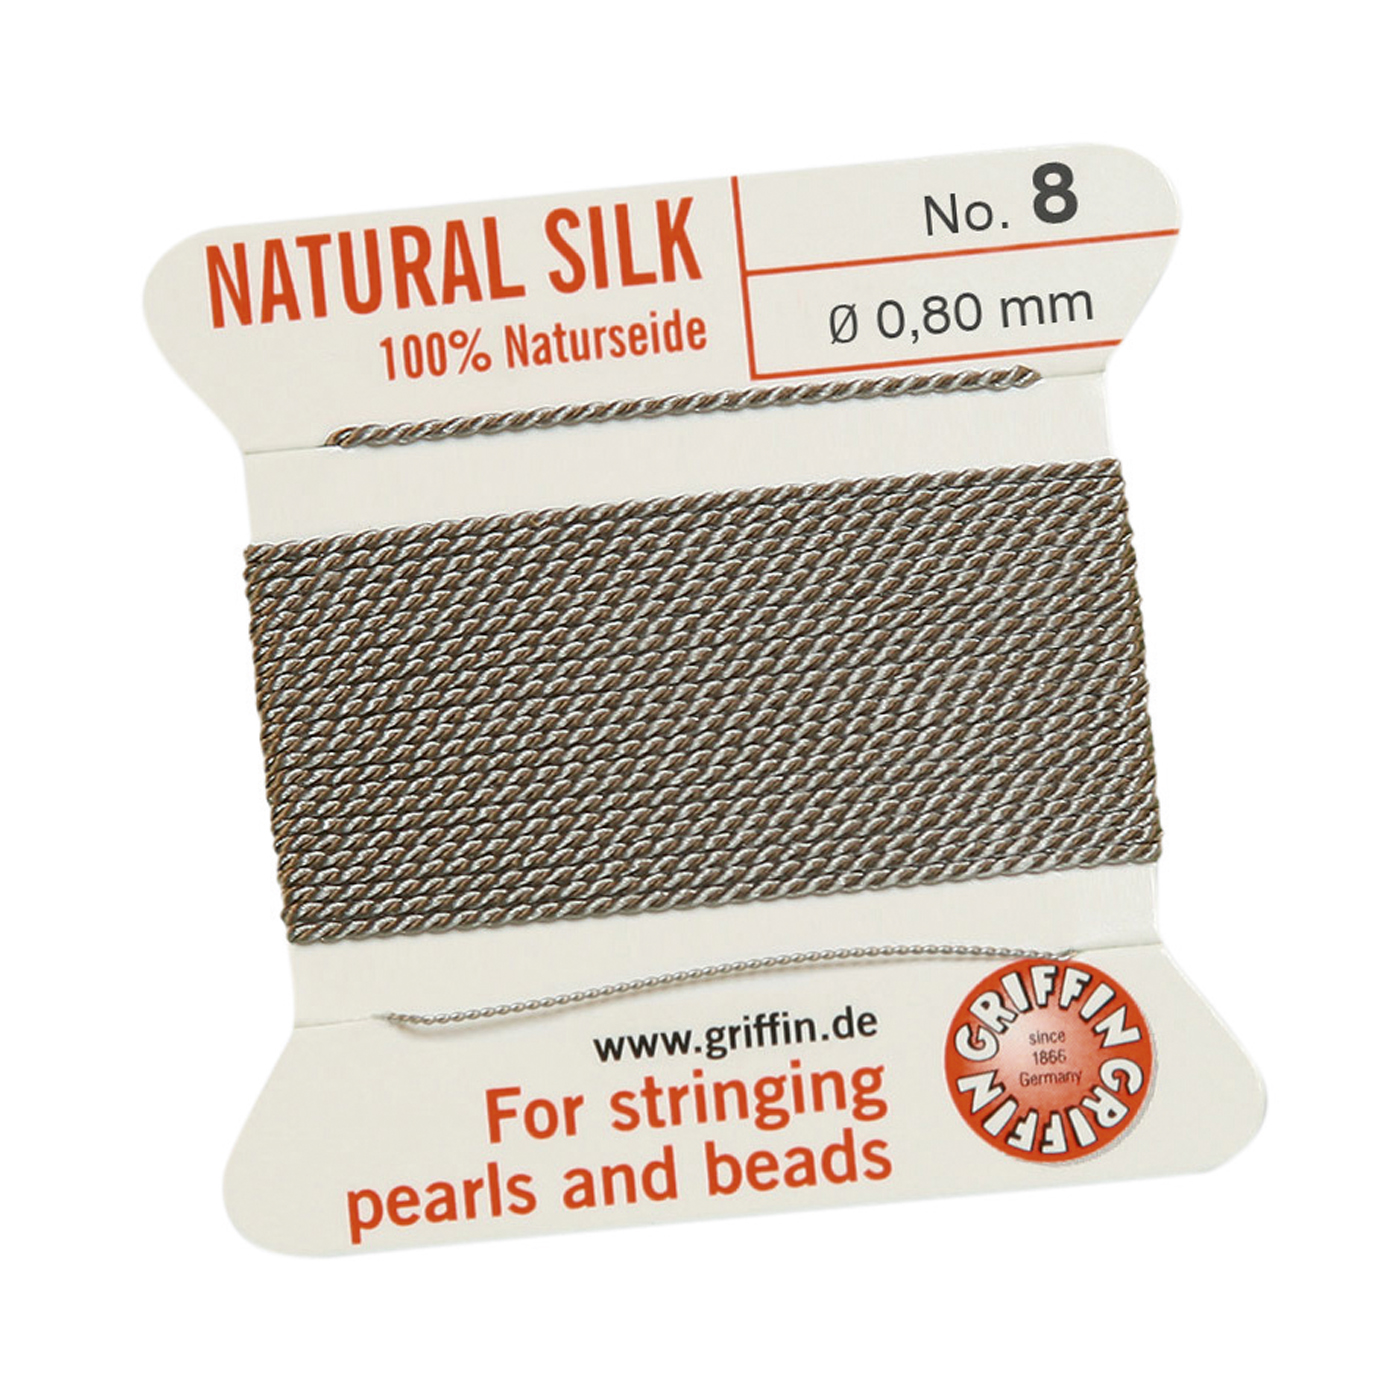 Bead Cord 100% Natural Silk, Grey, No. 8 - 2 m